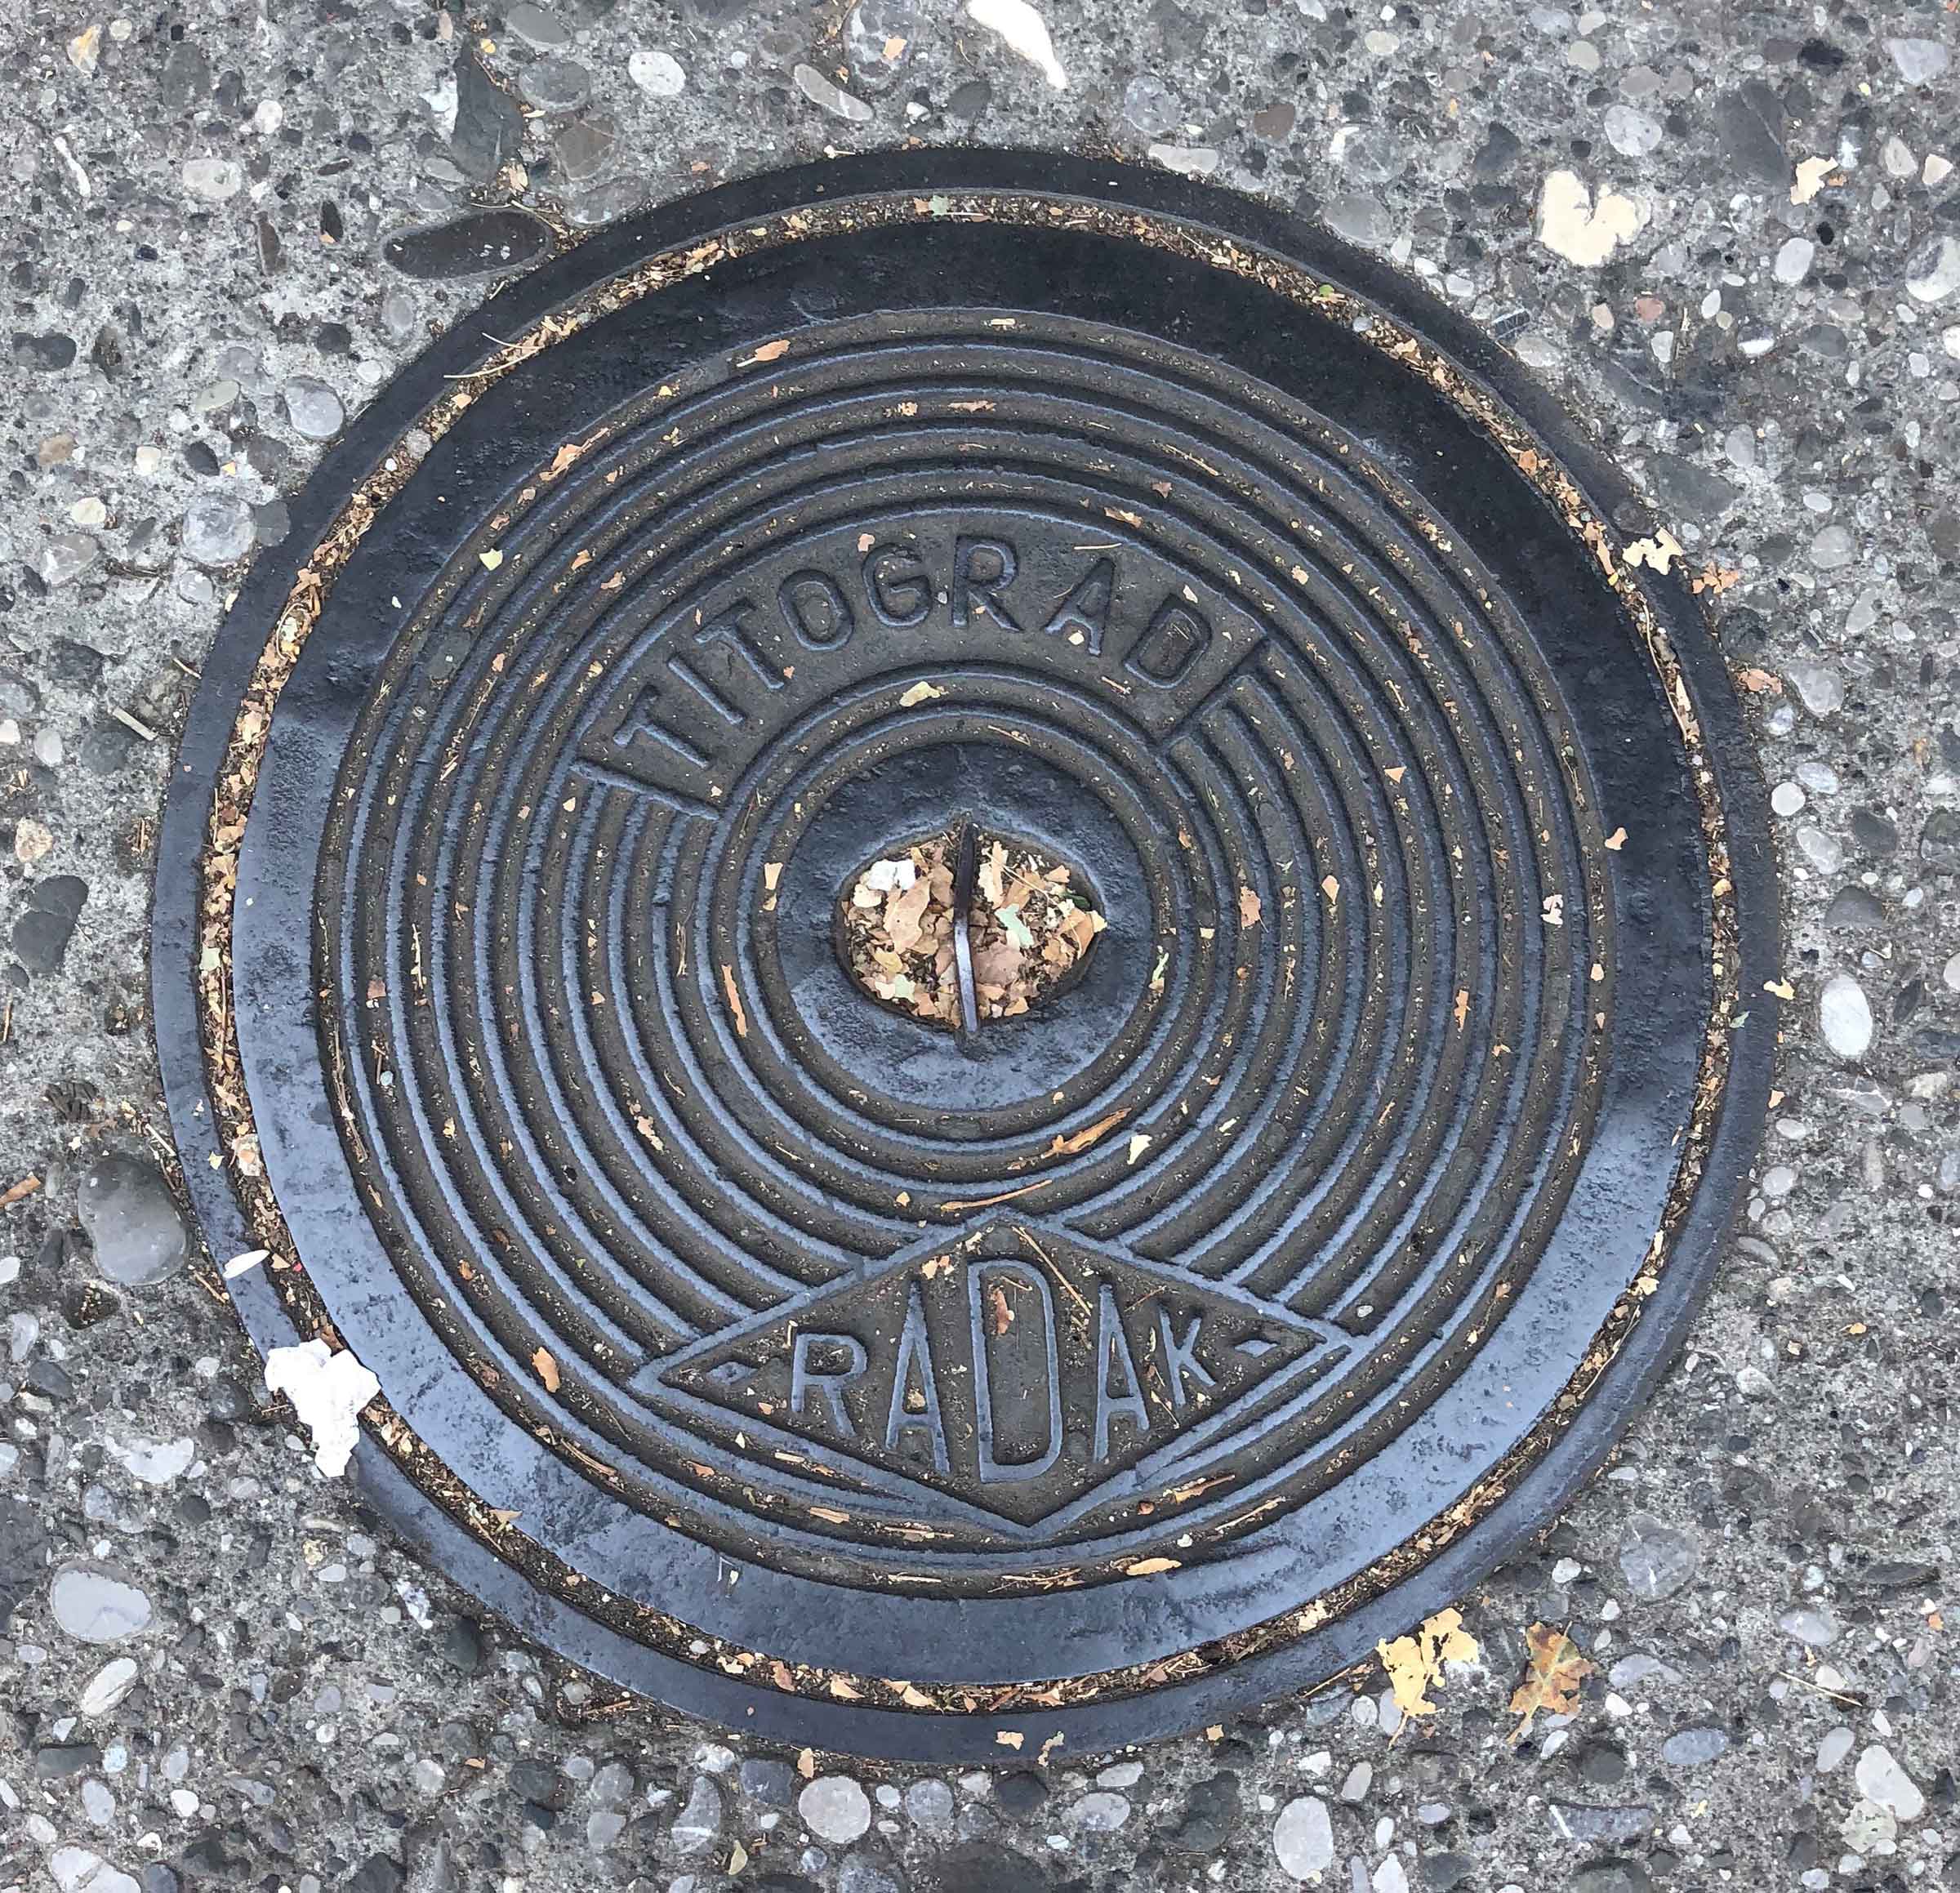 “Titograd” manhole cover